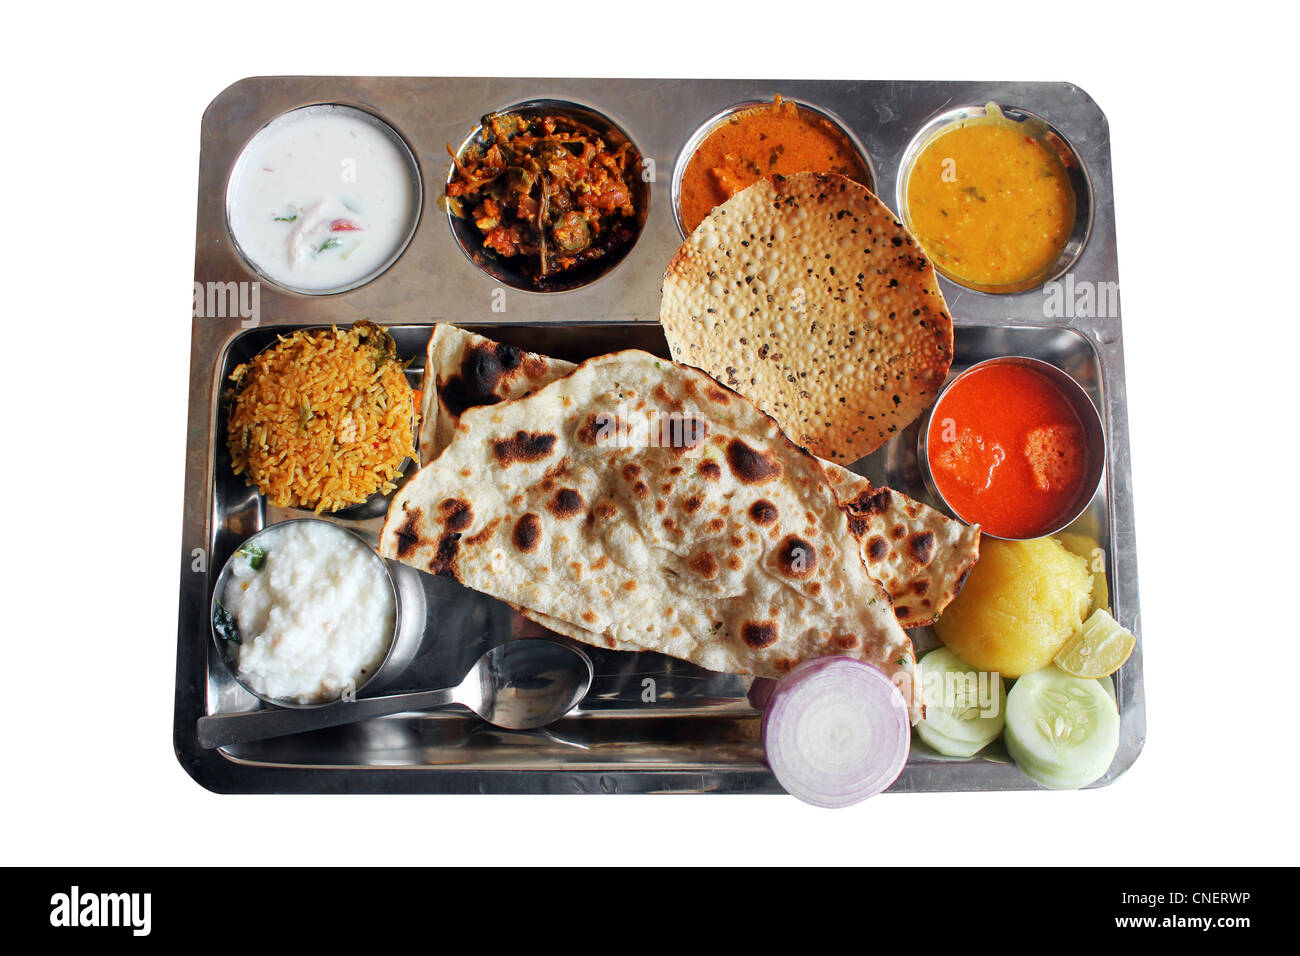 Repas plaque traditionnelle du nord de l'Inde ou le déjeuner avec roti, biryani, curry et la soupe. Banque D'Images